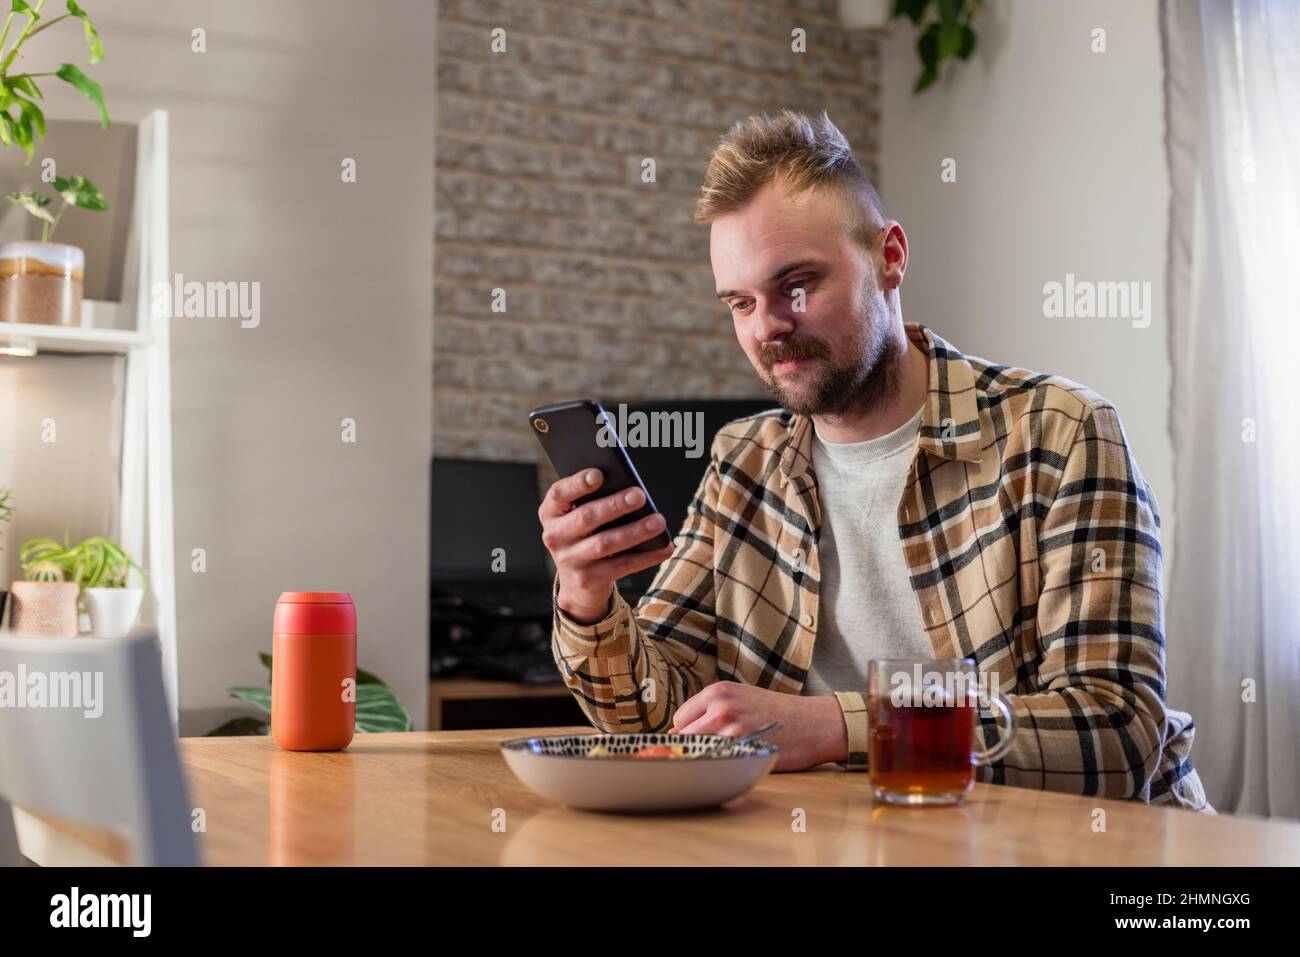 Vue latérale d'un jeune homme assis à une table dans son salon relaxant, il utilise son smartphone et il a une assiette de pâtes à proximité. Banque D'Images